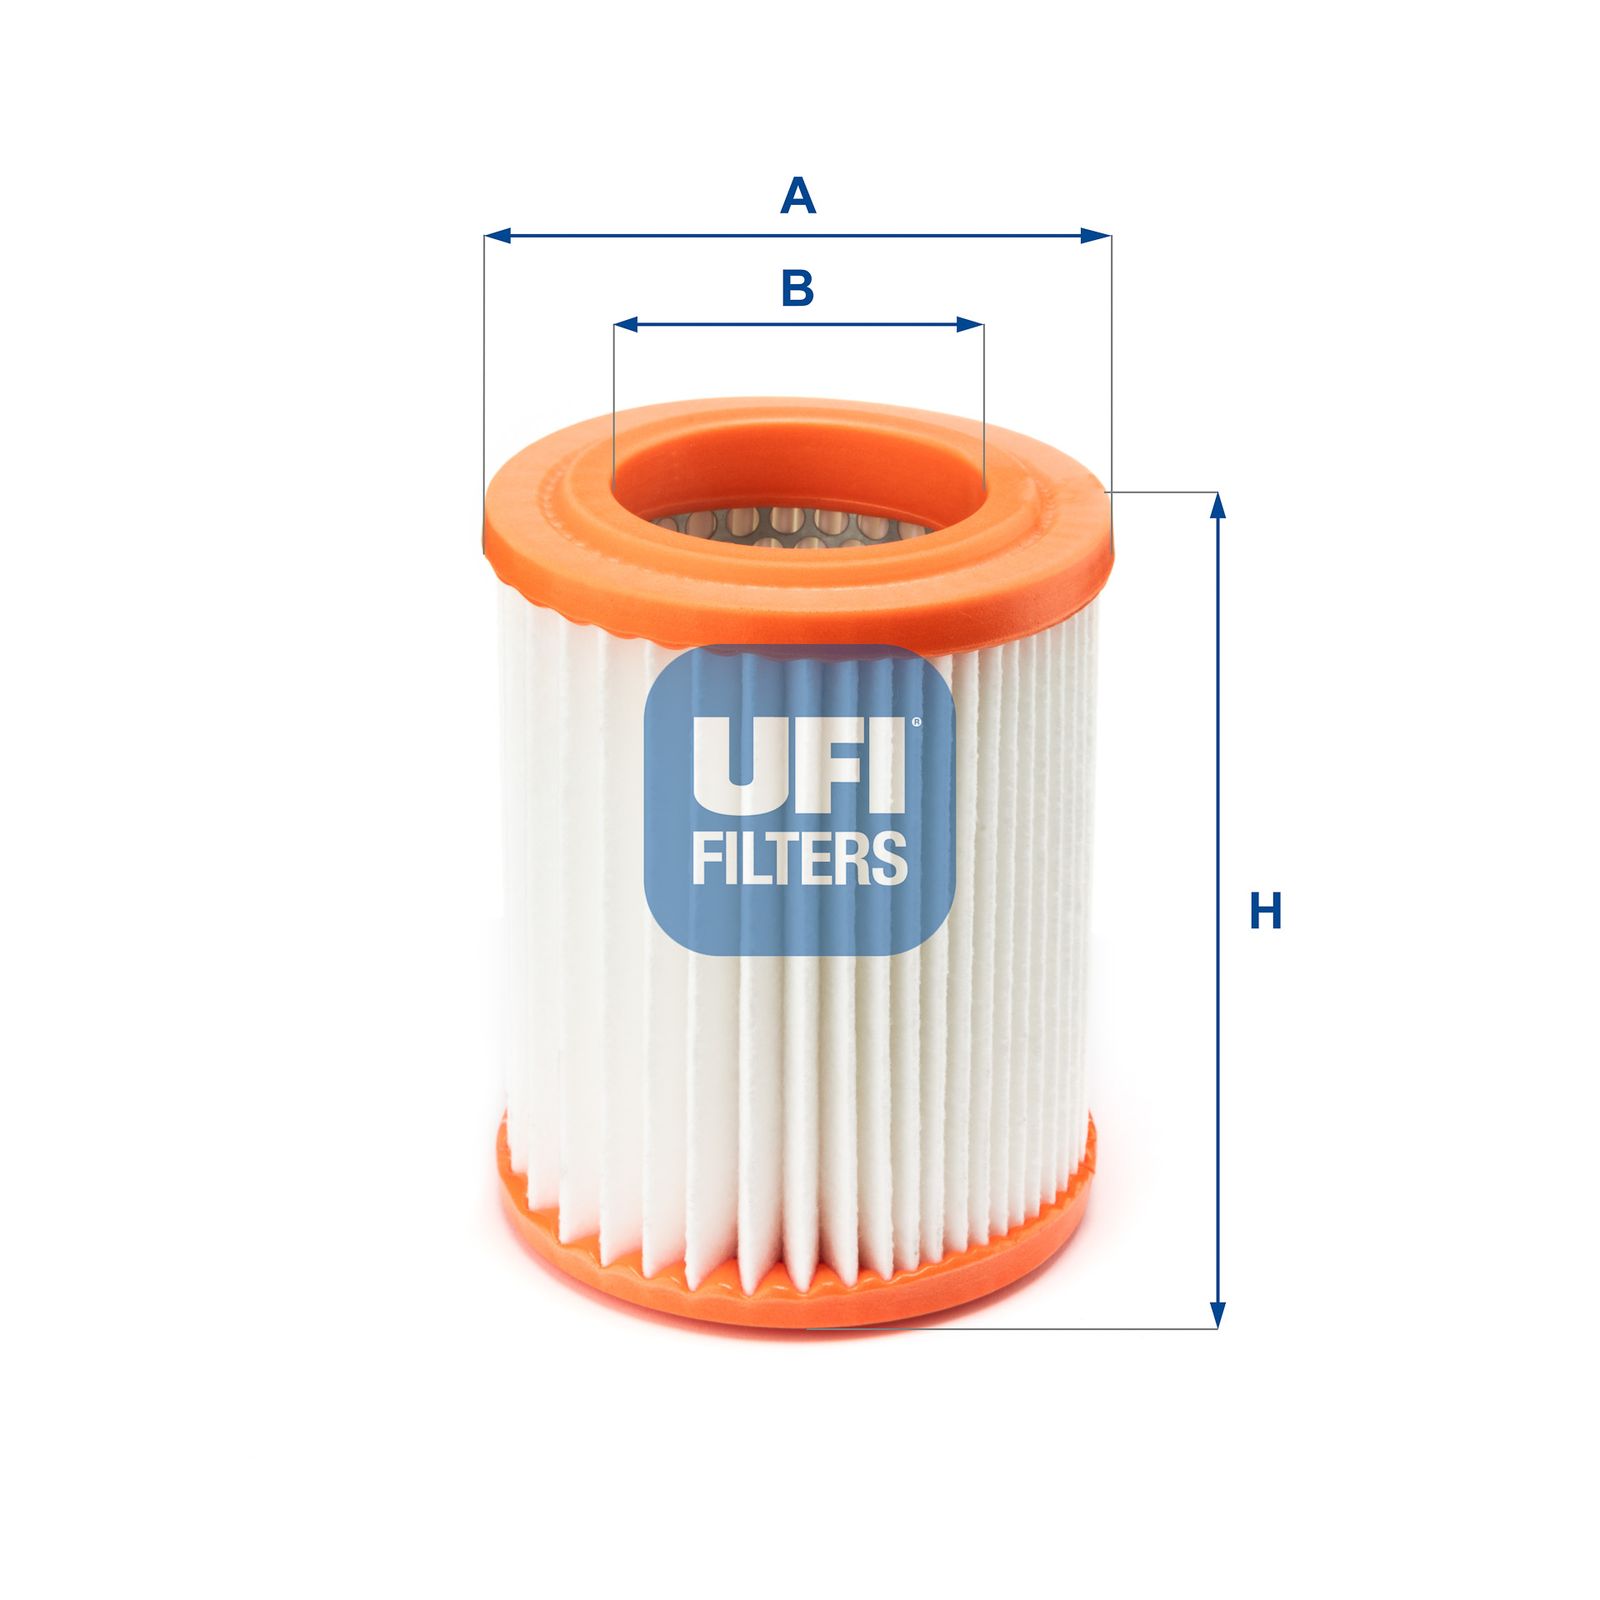 Vzduchový filtr UFI 27.345.00